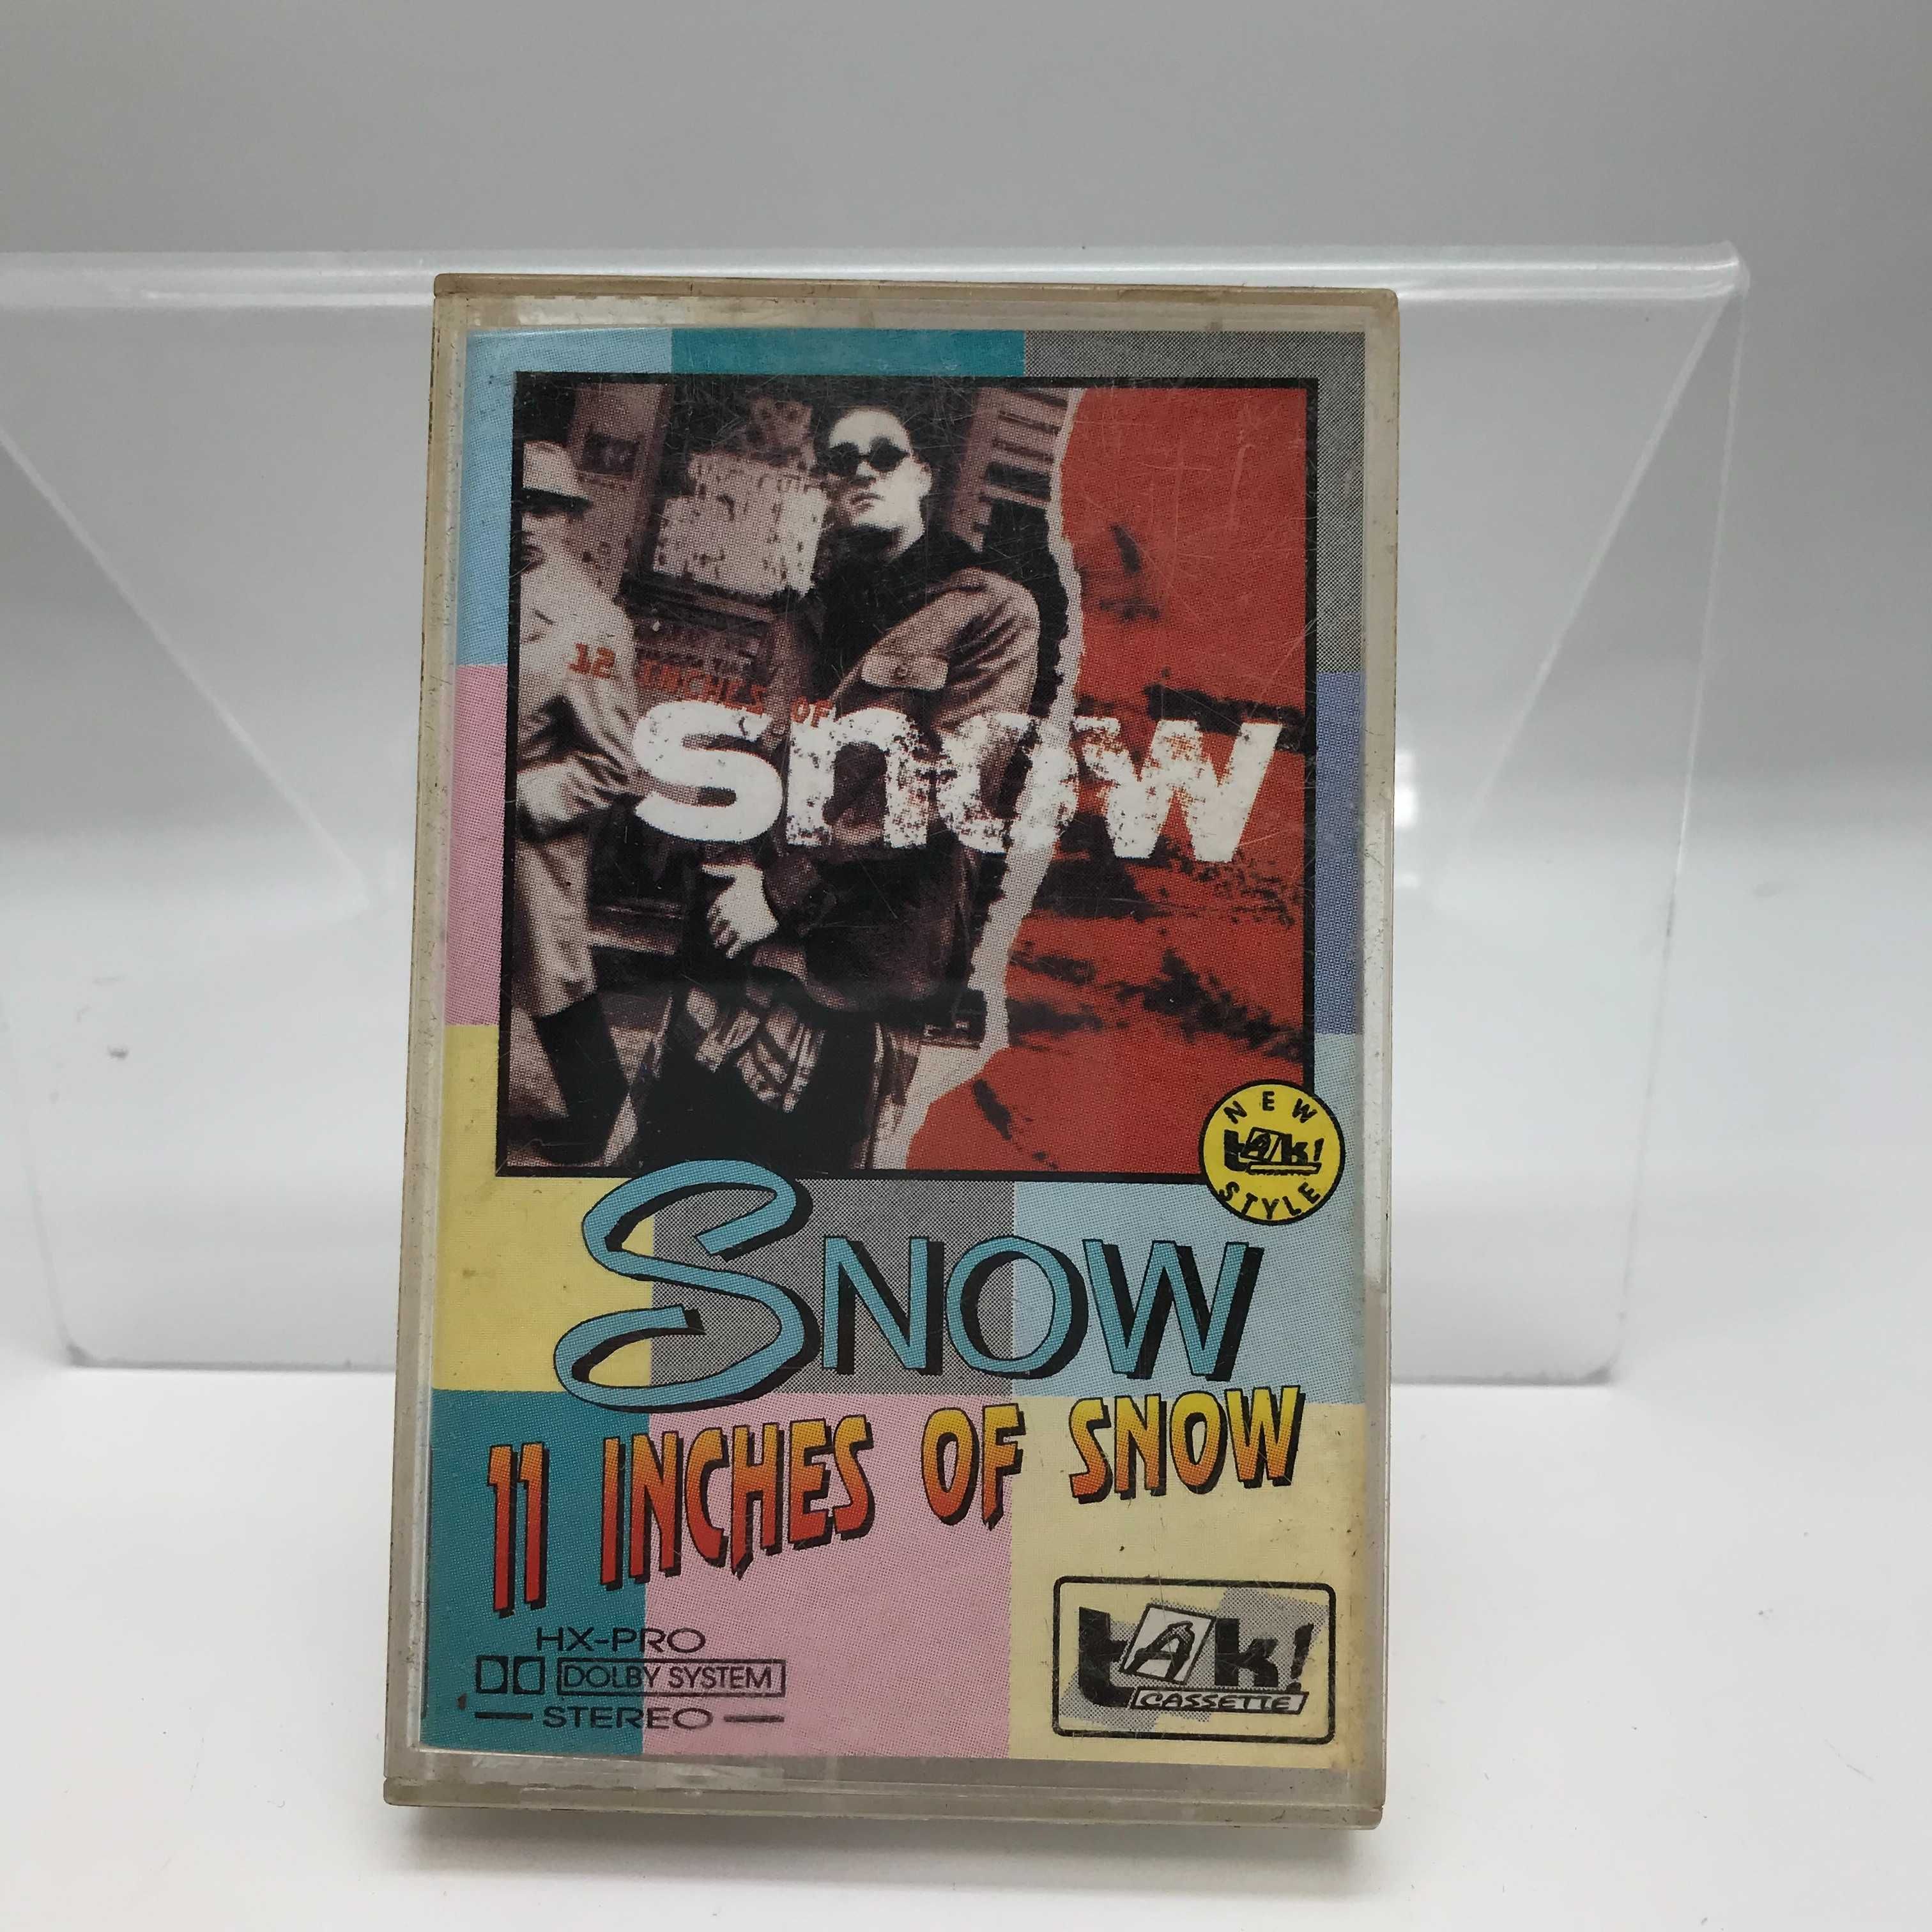 kaseta snow - 11 inches of snow (1981)